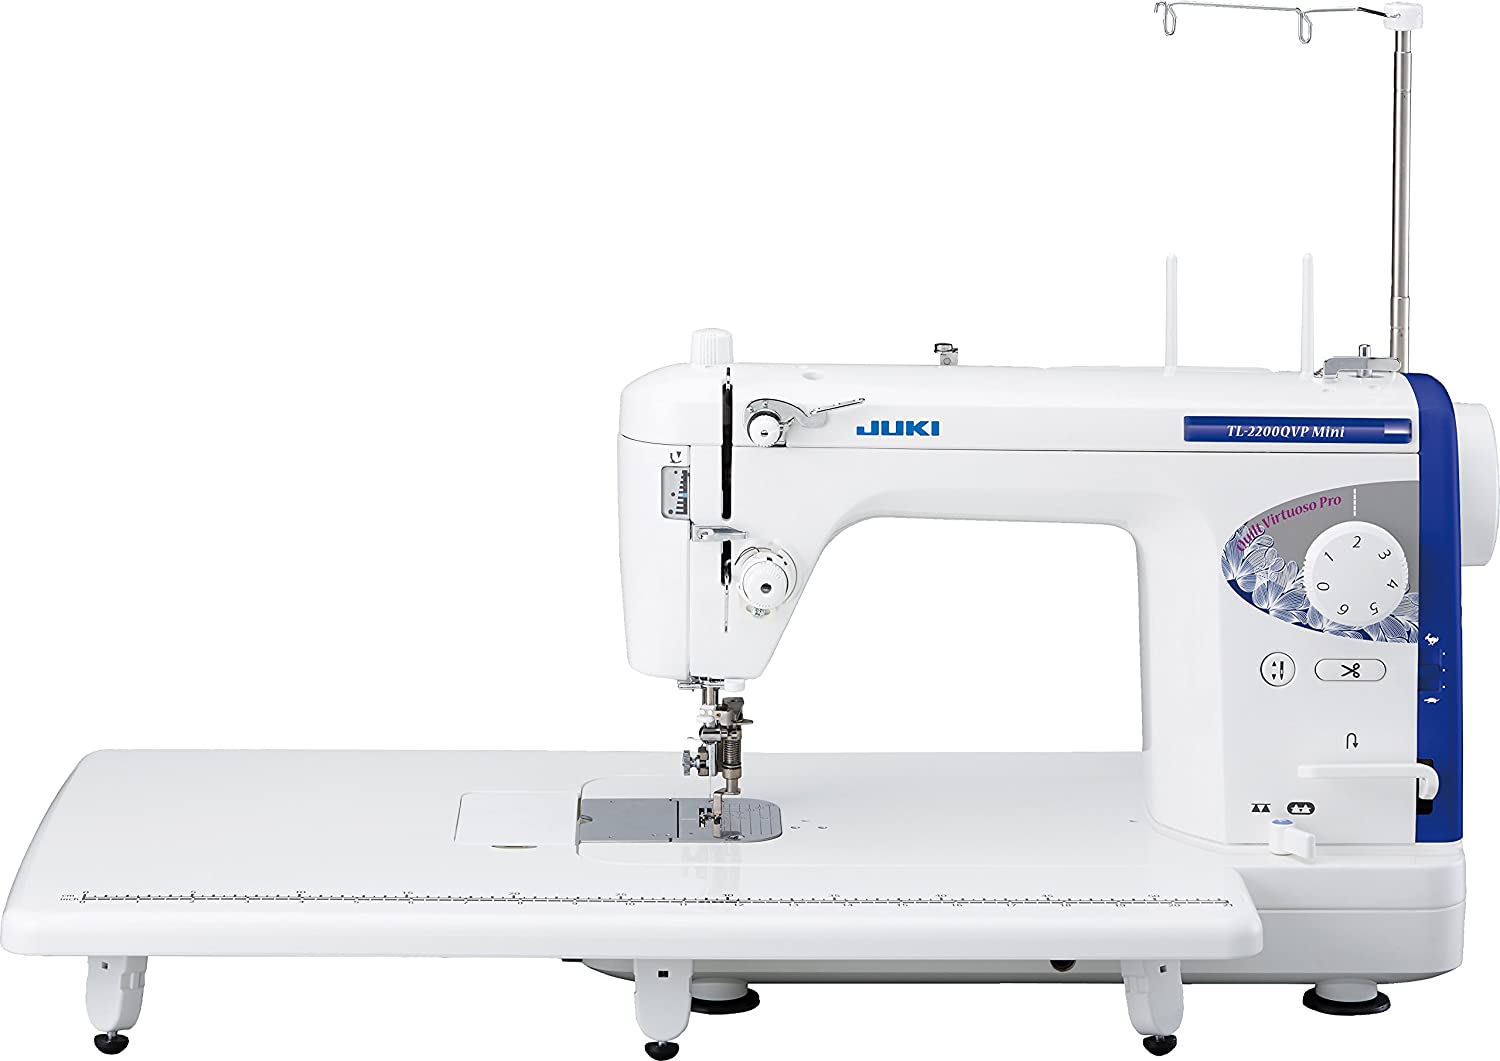 Maquina de coser Juki TL 2200 QVP mini